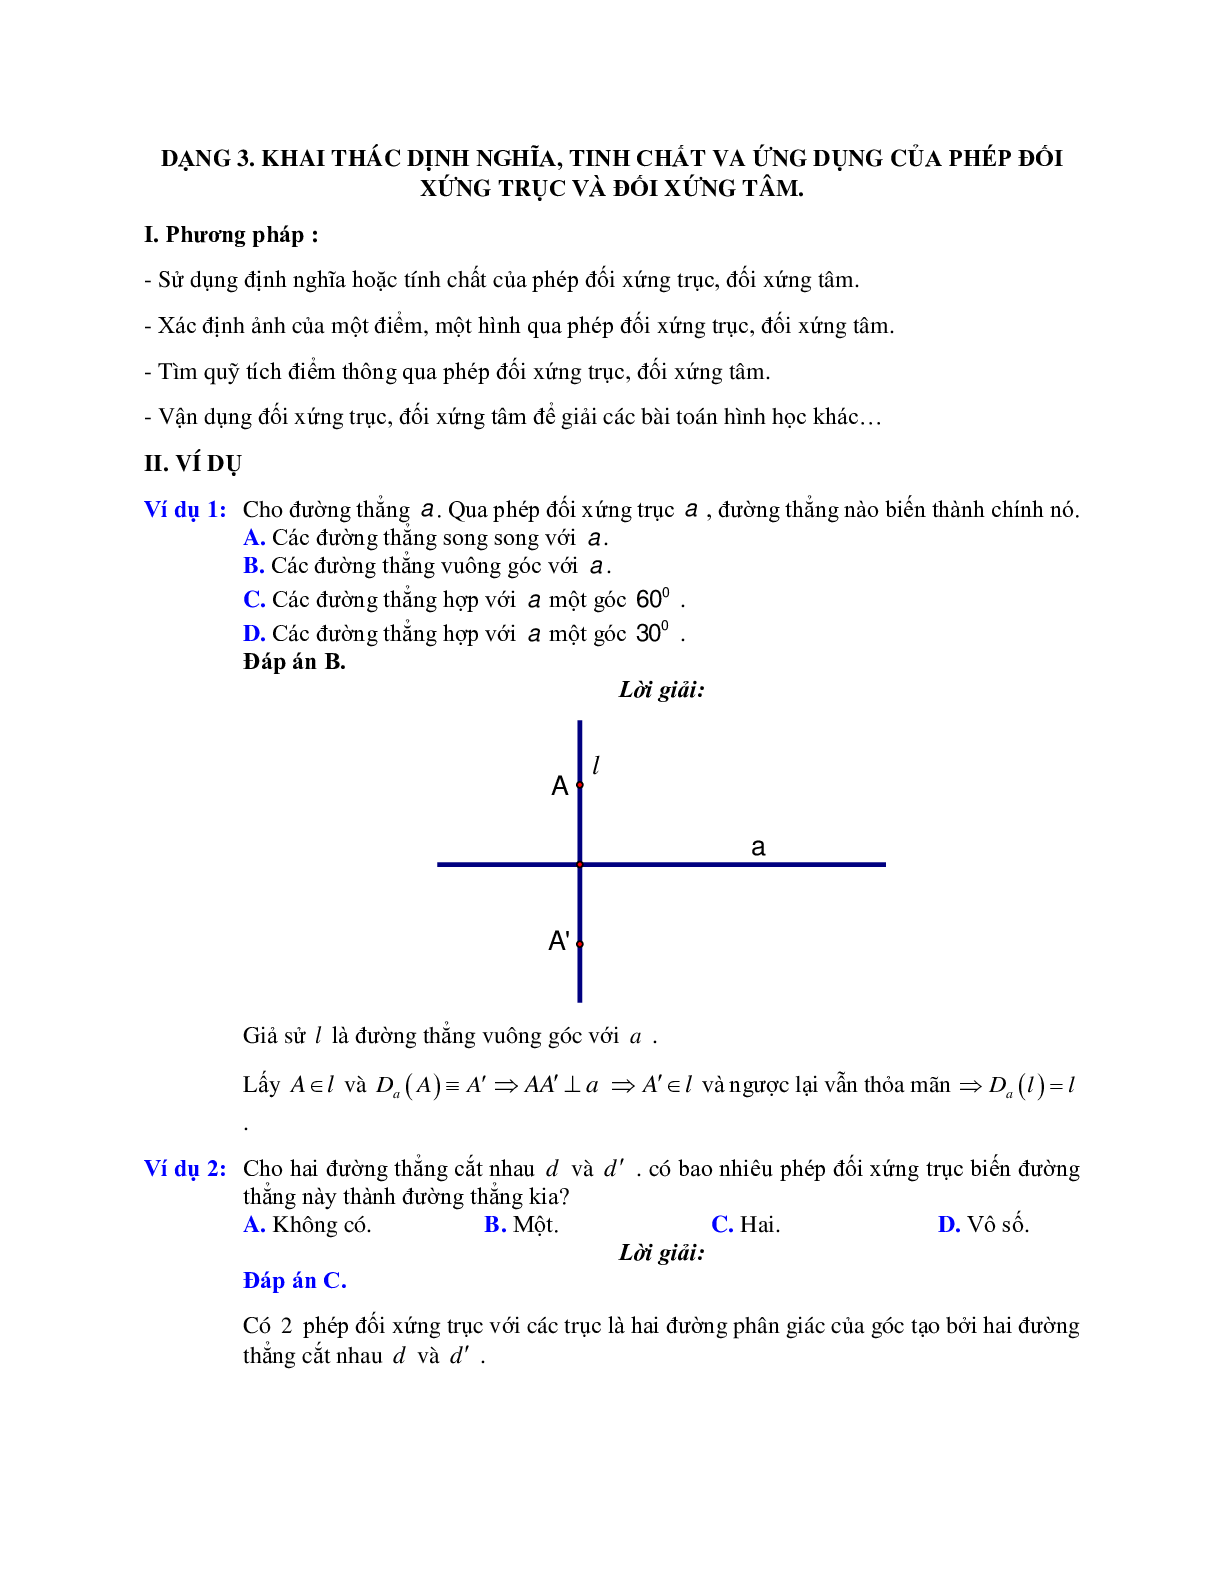 Các bài toán khai thác định nghĩa, tính chất và ứng dụng của phép đối xứng trục và đối xứng tâm (trang 1)